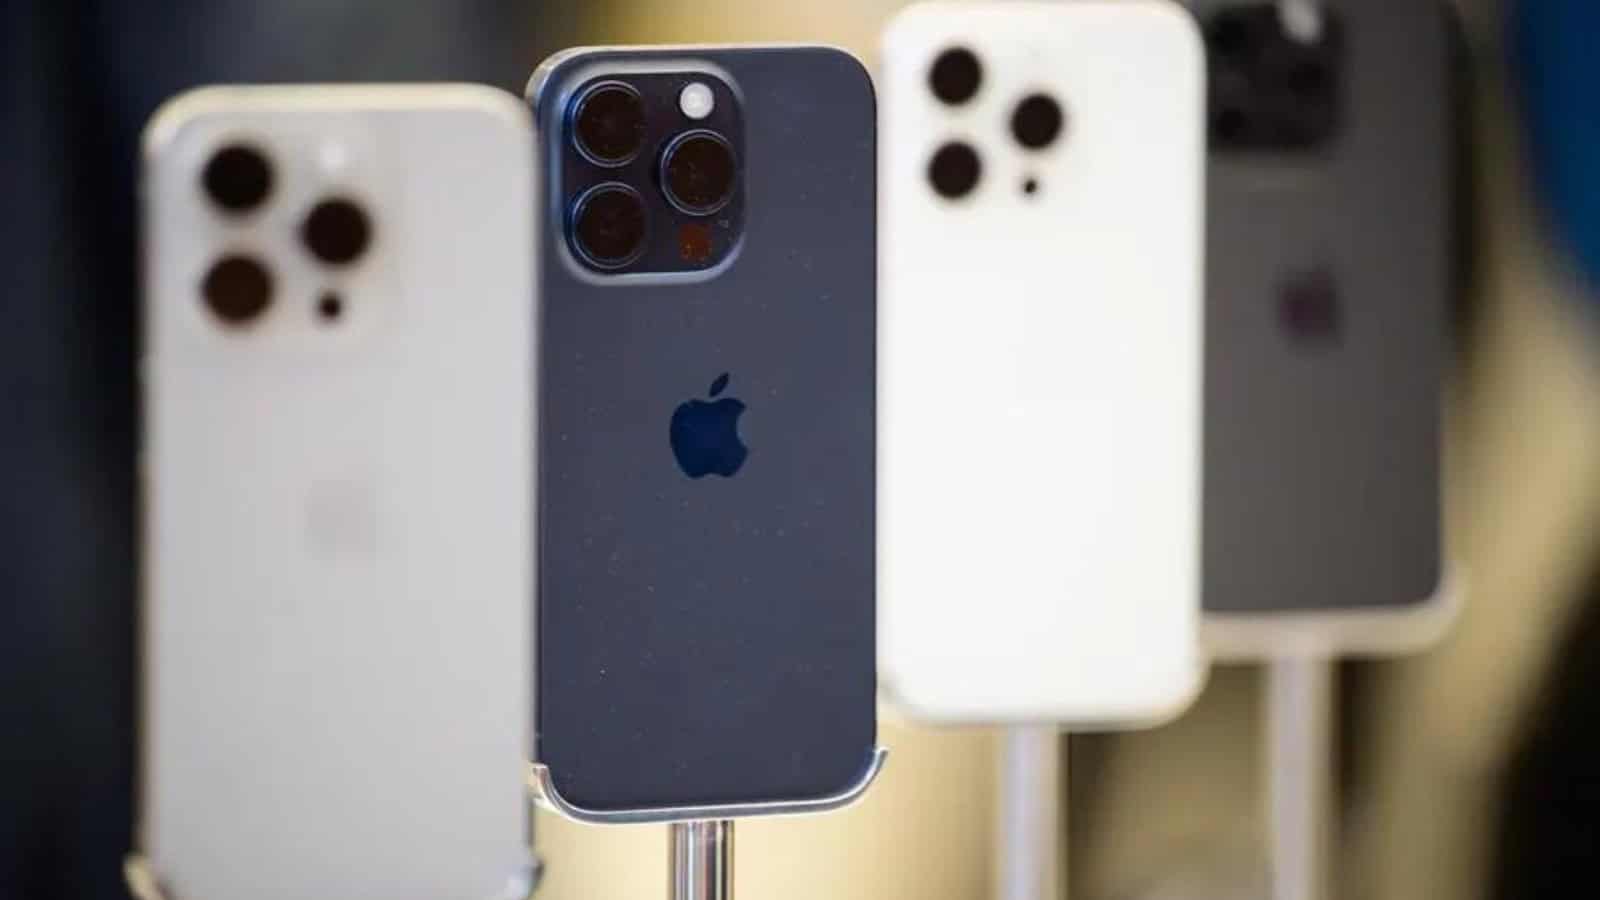 iPhone 16, rumor: i tasti potrebbero essere capacitivi